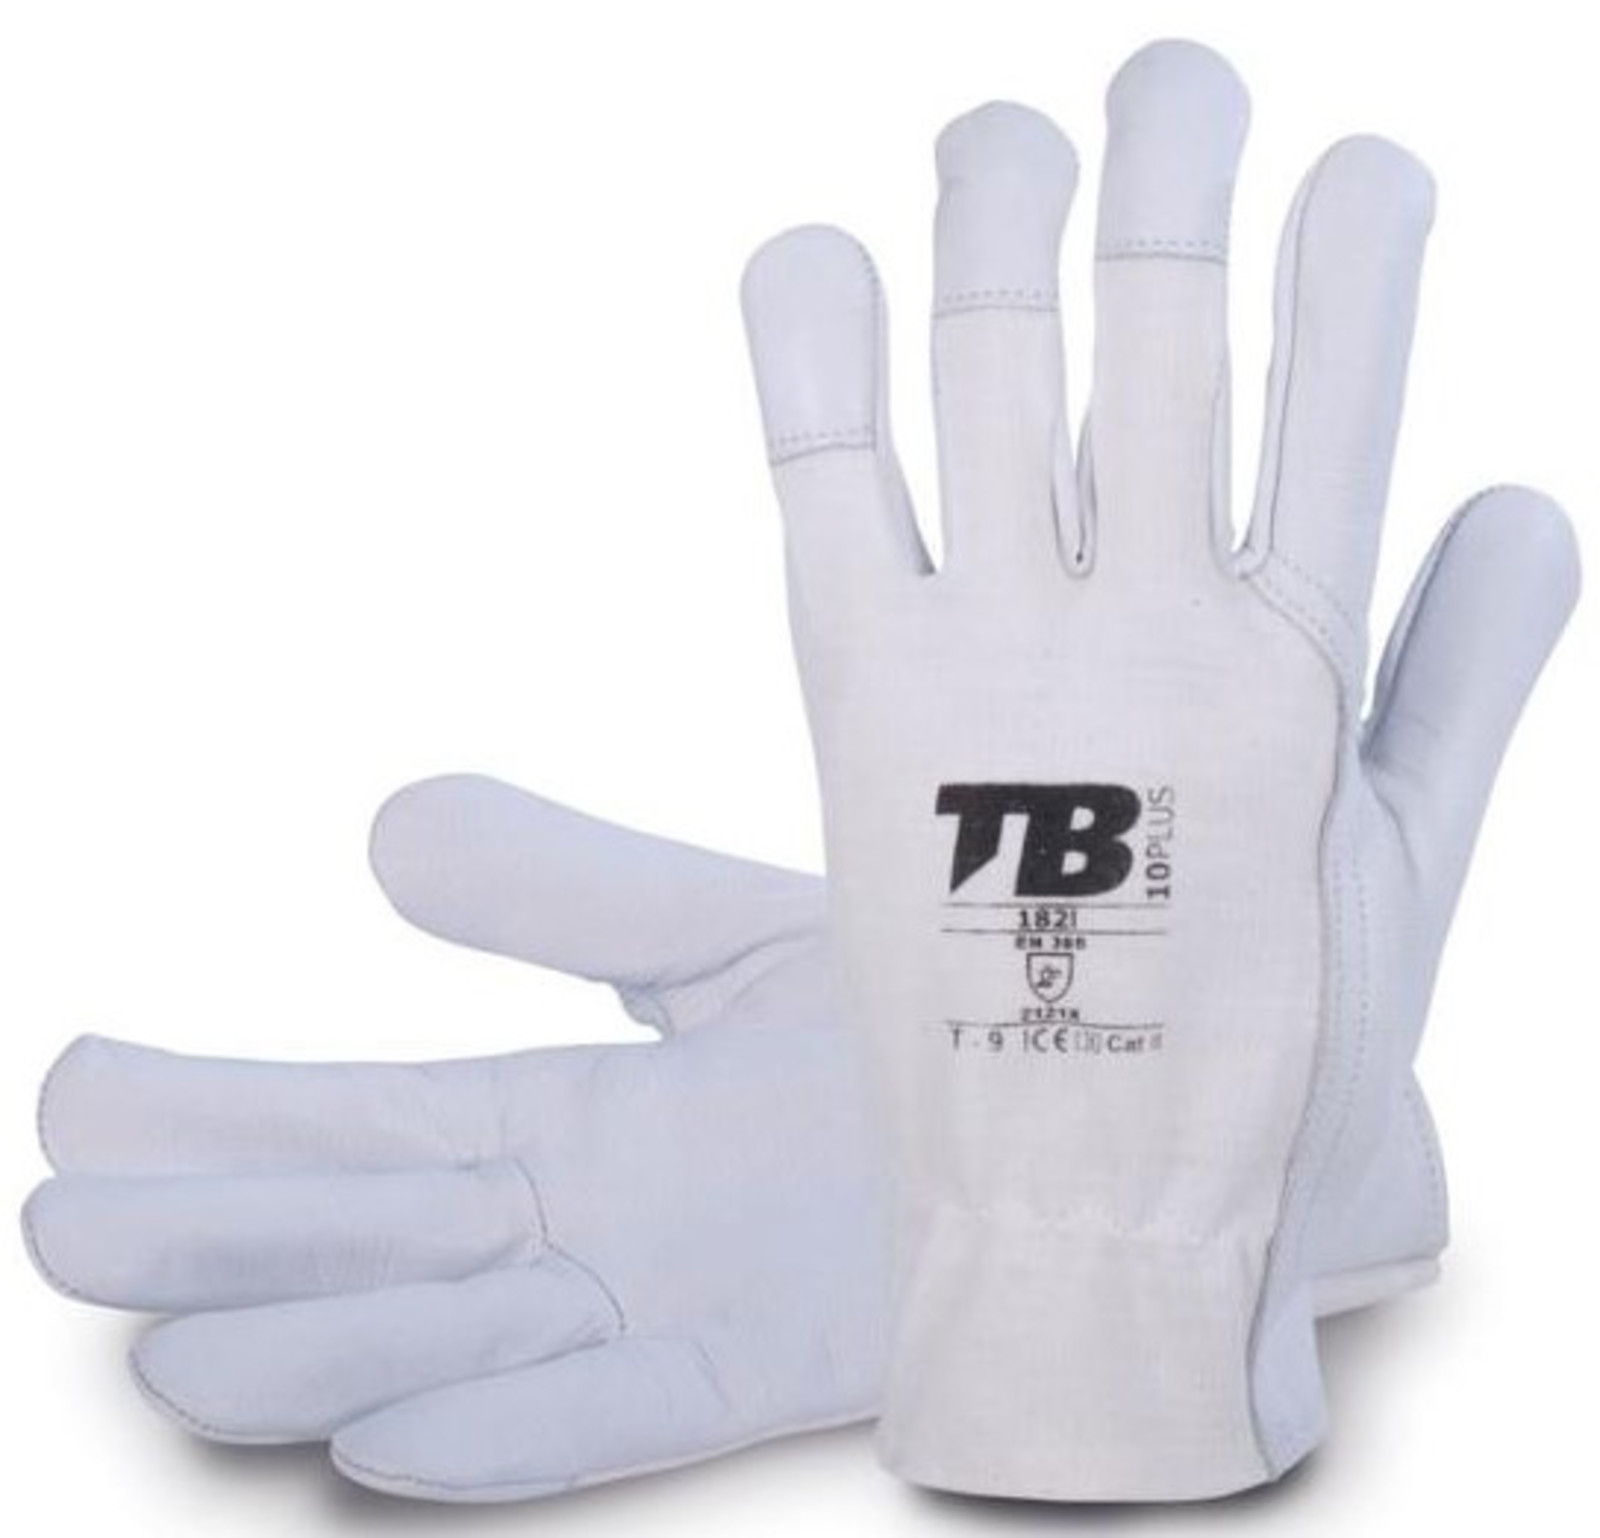 Pracovné rukavice TB 182IB kombinované - veľkosť: 6/XS